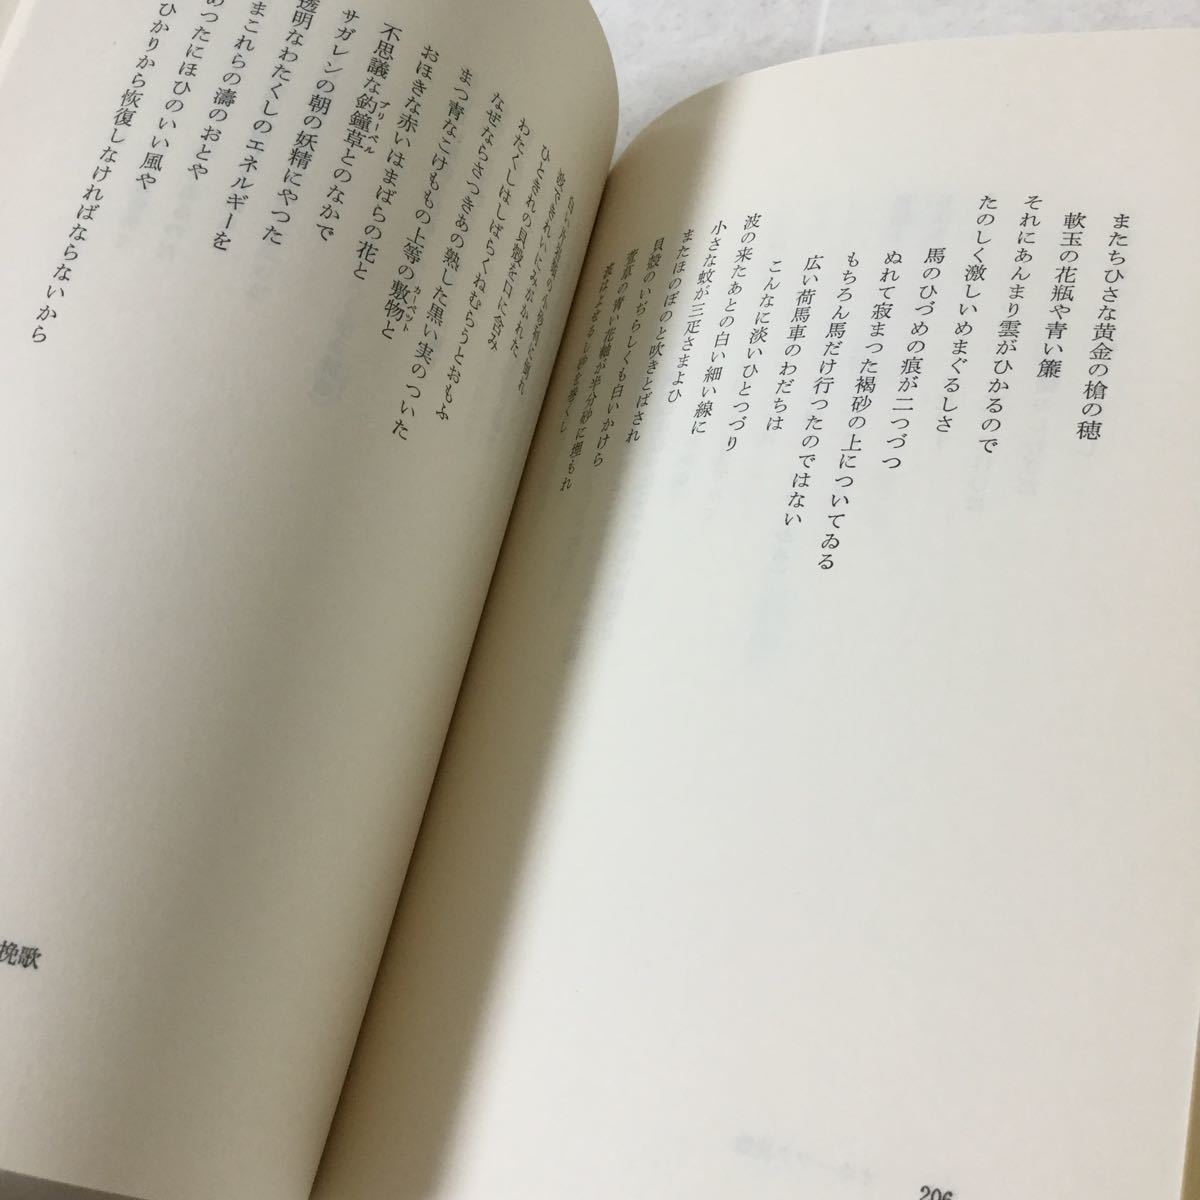 b23 宮沢賢治全集 第二巻 1979年6月15日初版第一刷発行 筑摩書房 小説 日本作家 日本小説 本 _画像8